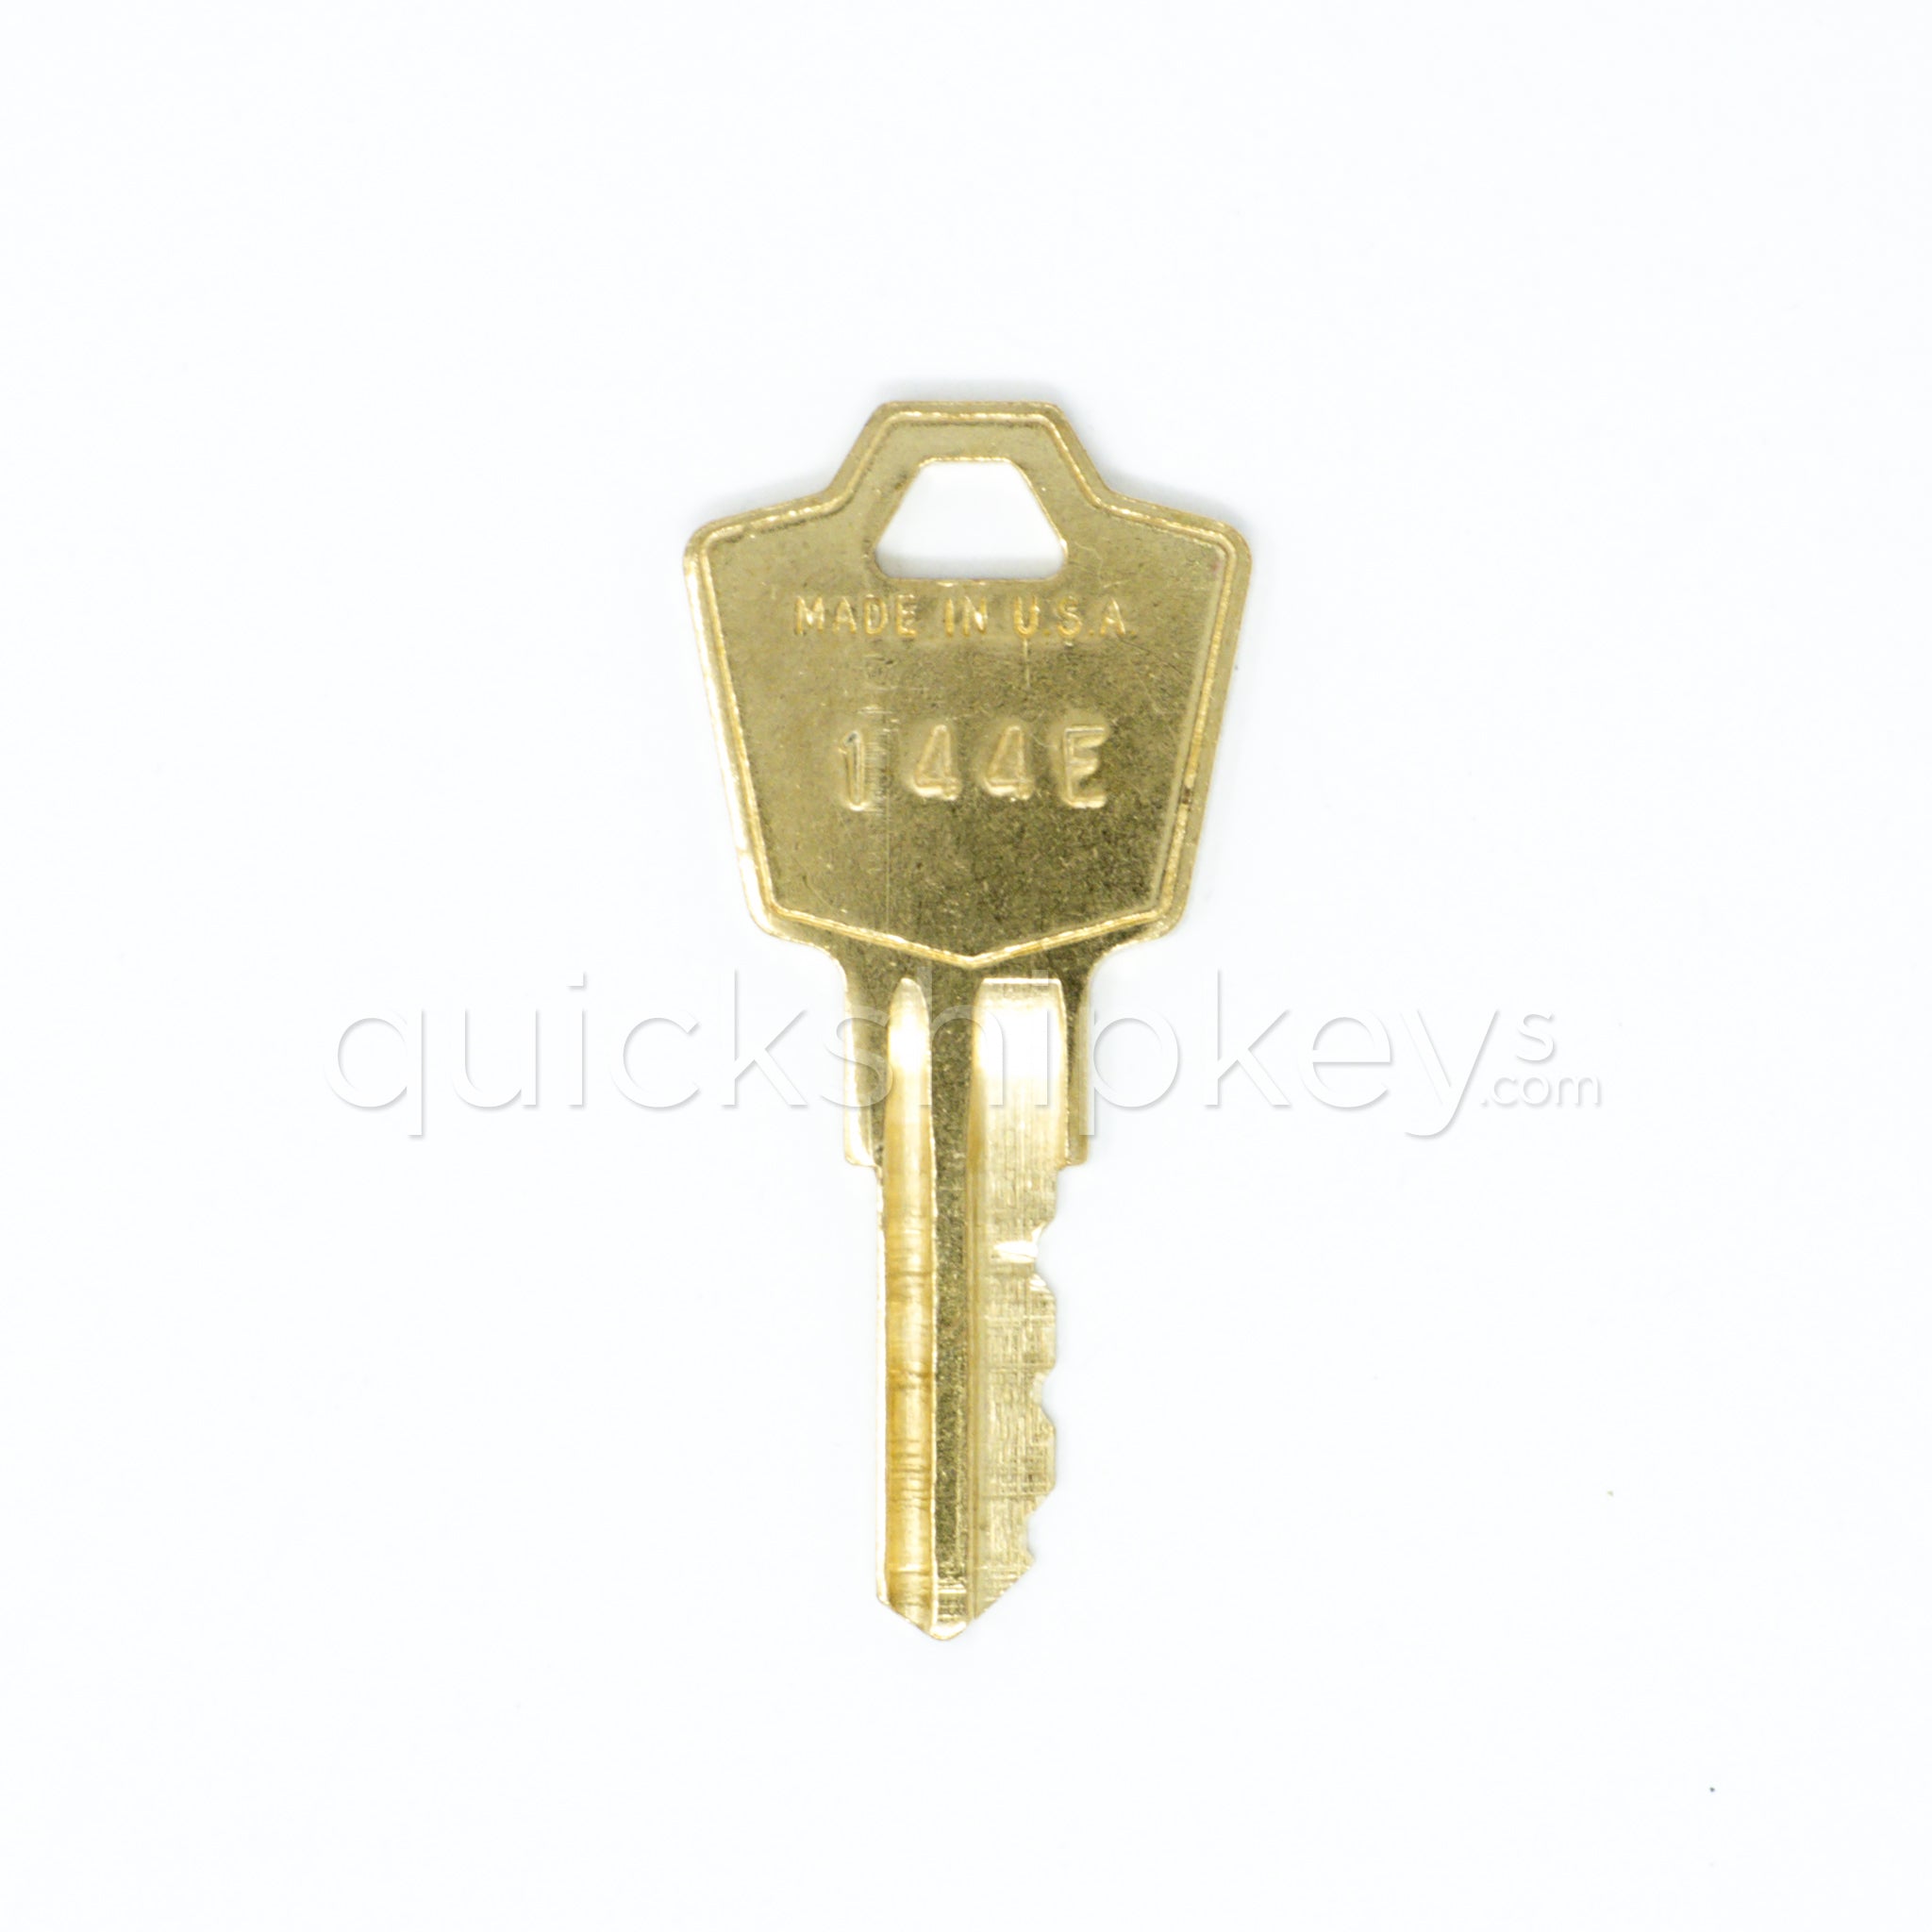 Hon 144e File Cabinet Replacement Keys Quickshipkeys Com